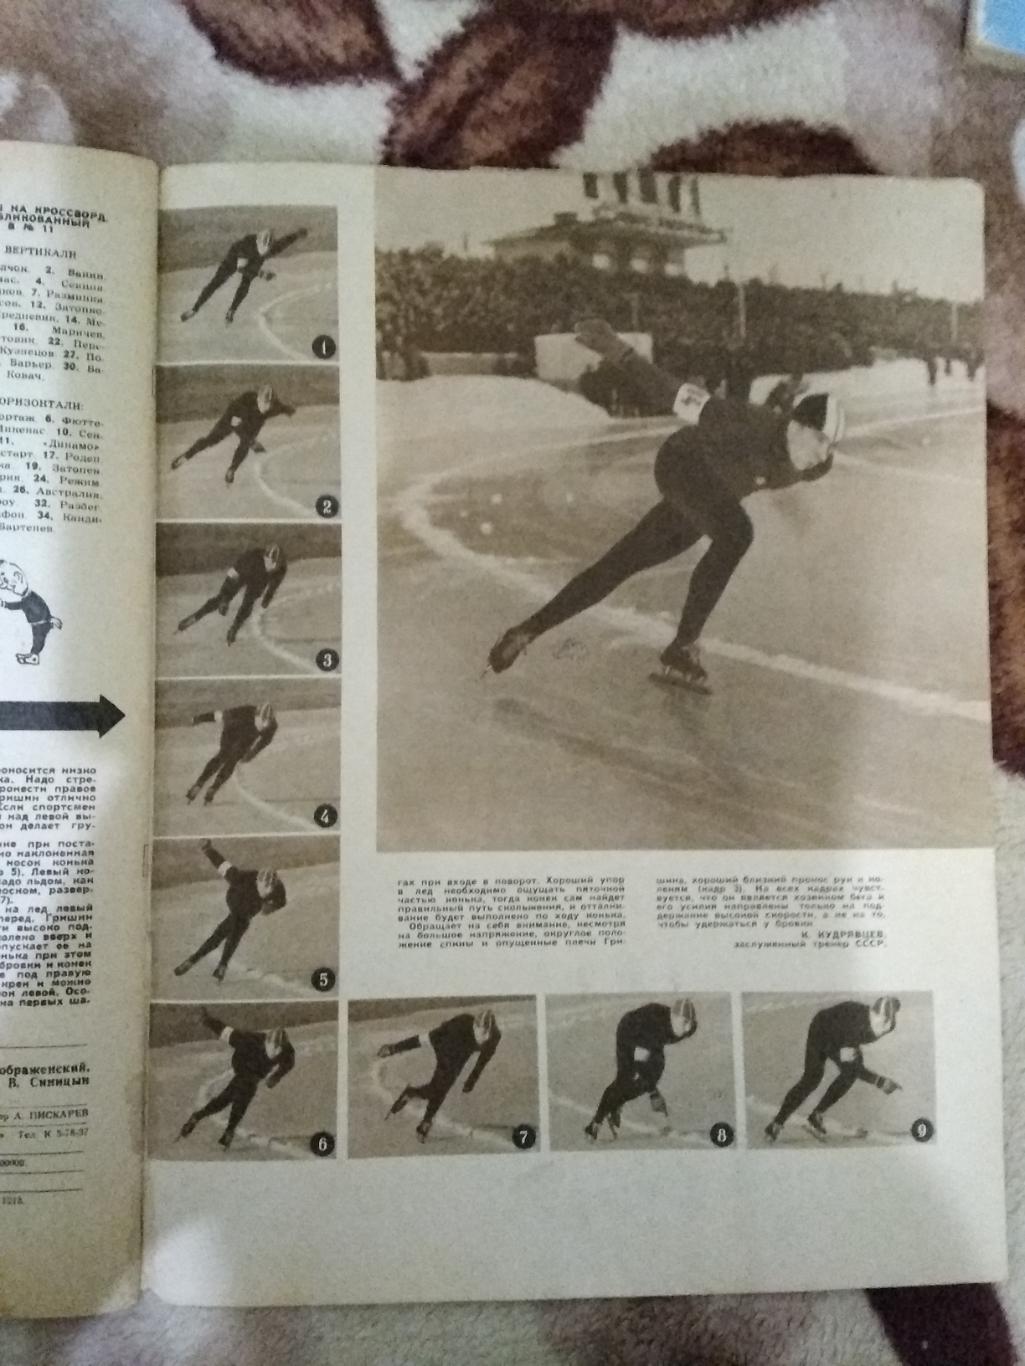 Журнал.Физкультура и спорт № 2 1961 г. (ФиС). 4